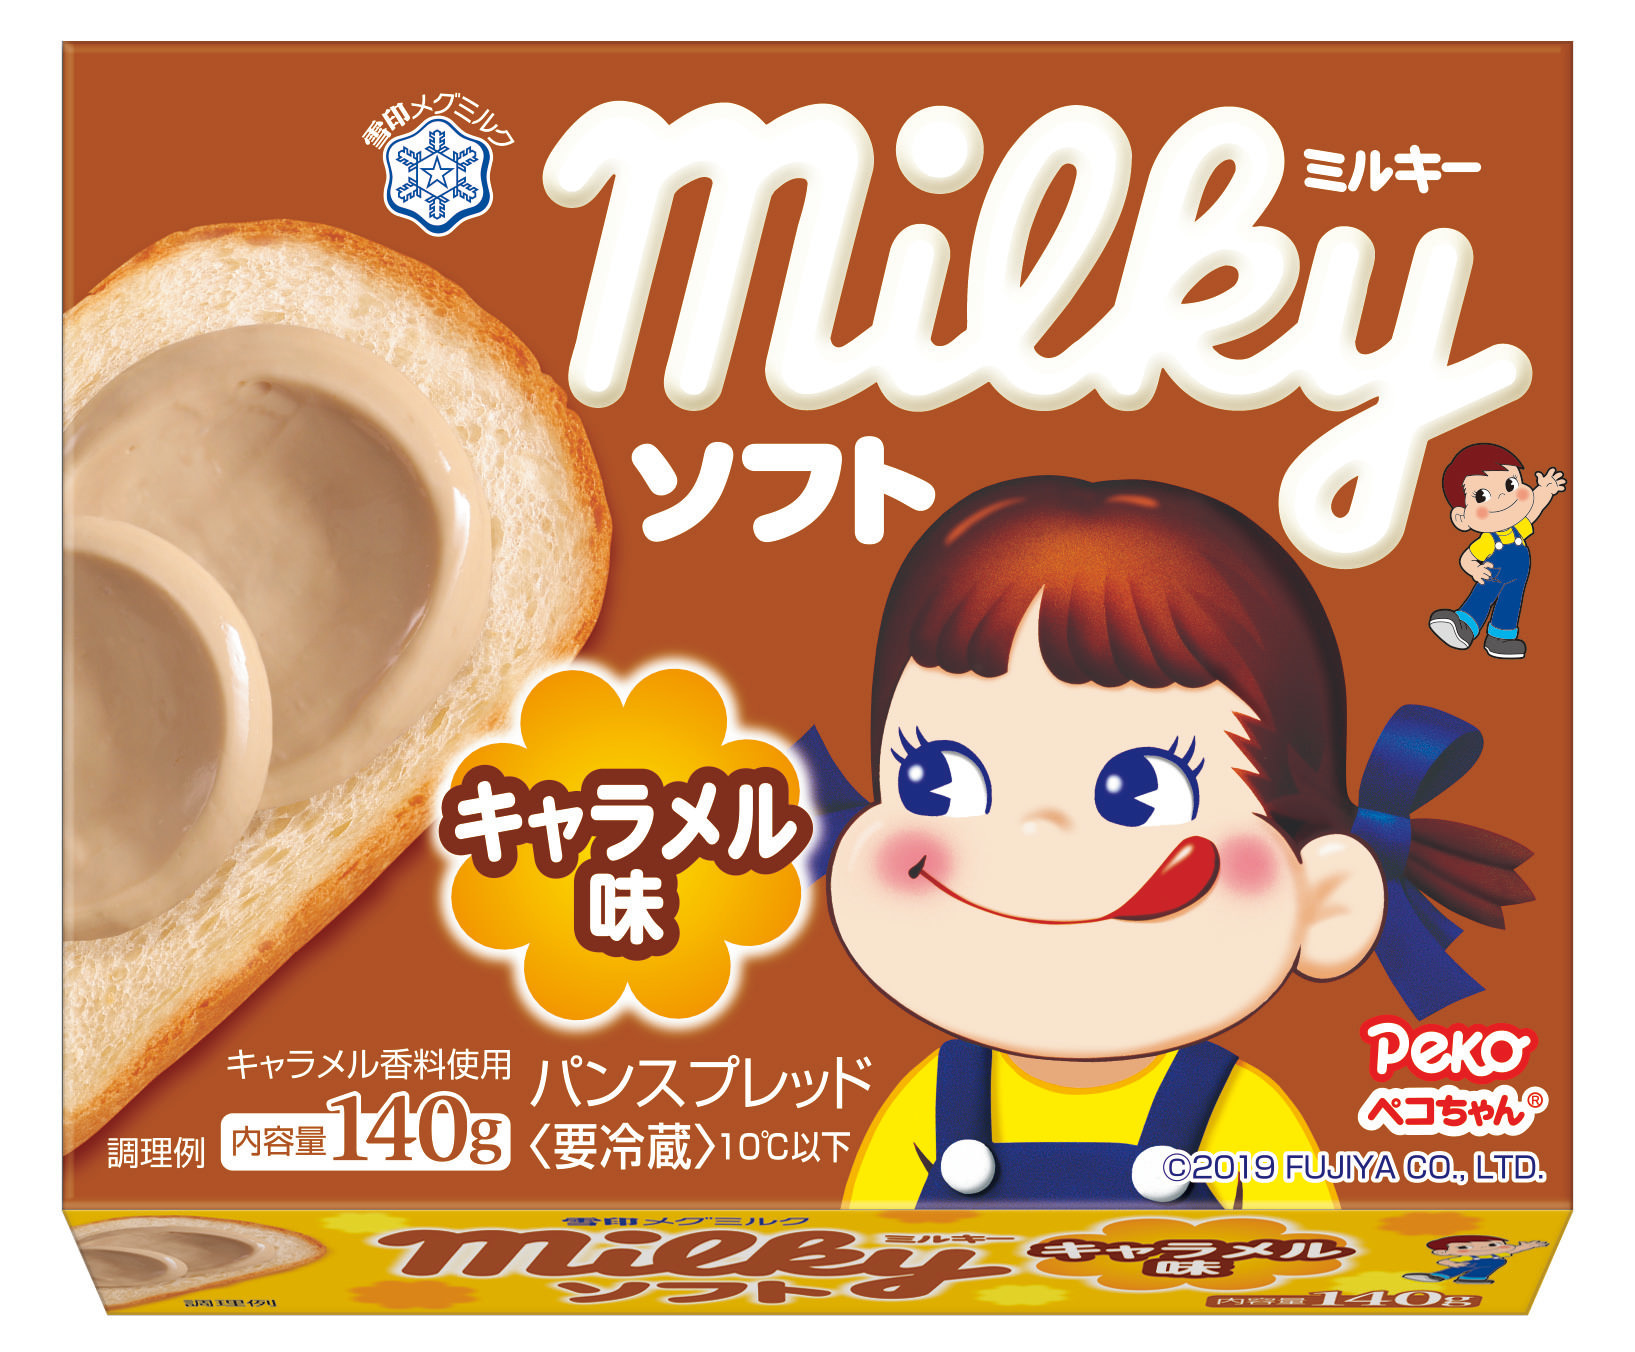 【雪印メグミルク】
『ミルキー ソフト キャラメル味』（140g）

2019年2月21日（木）より全国にて新発売